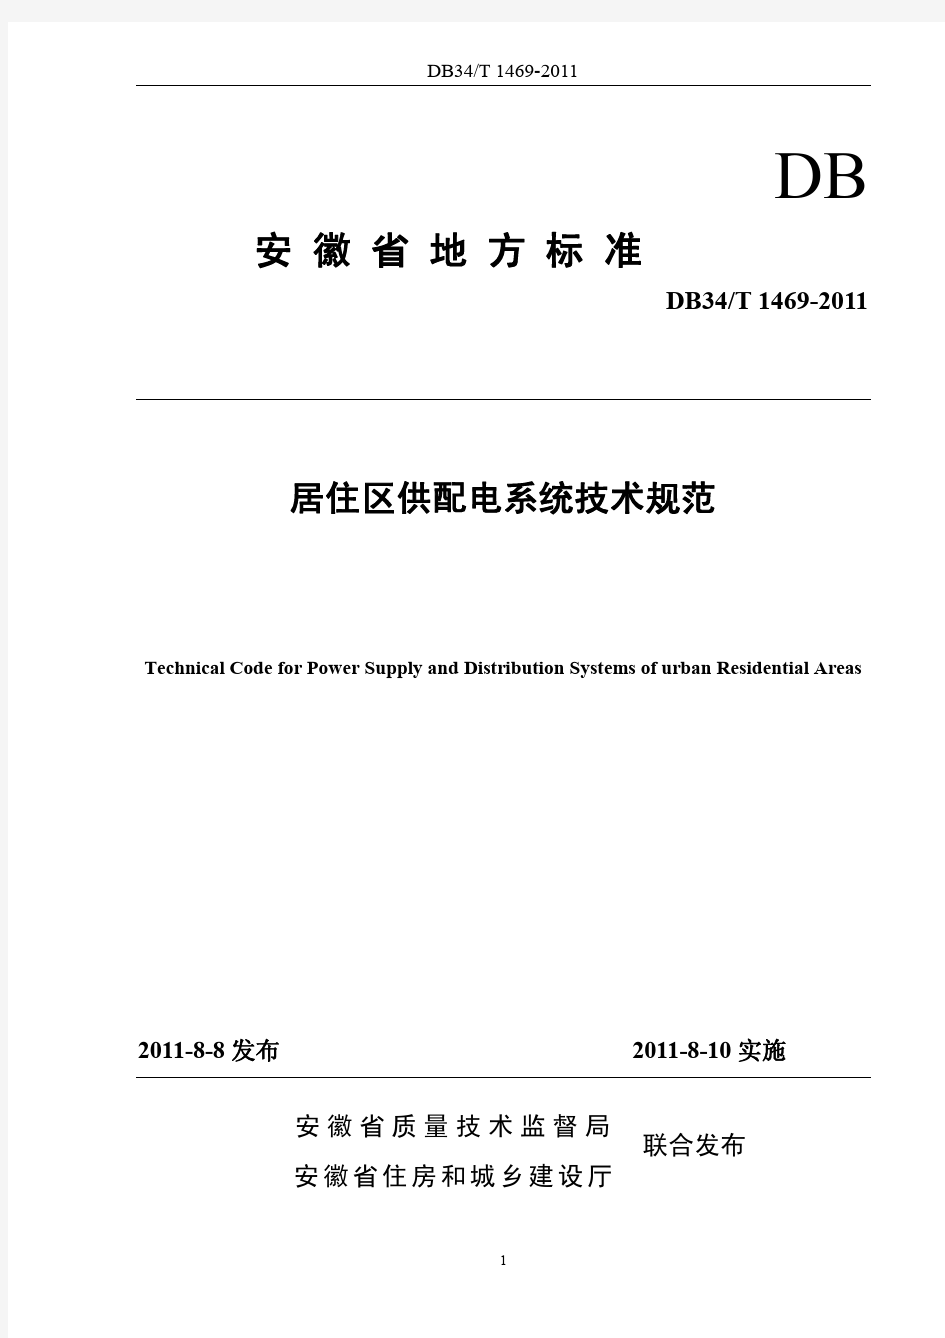 安徽省地标居住区供配电技术标准DB34T 1469-2011